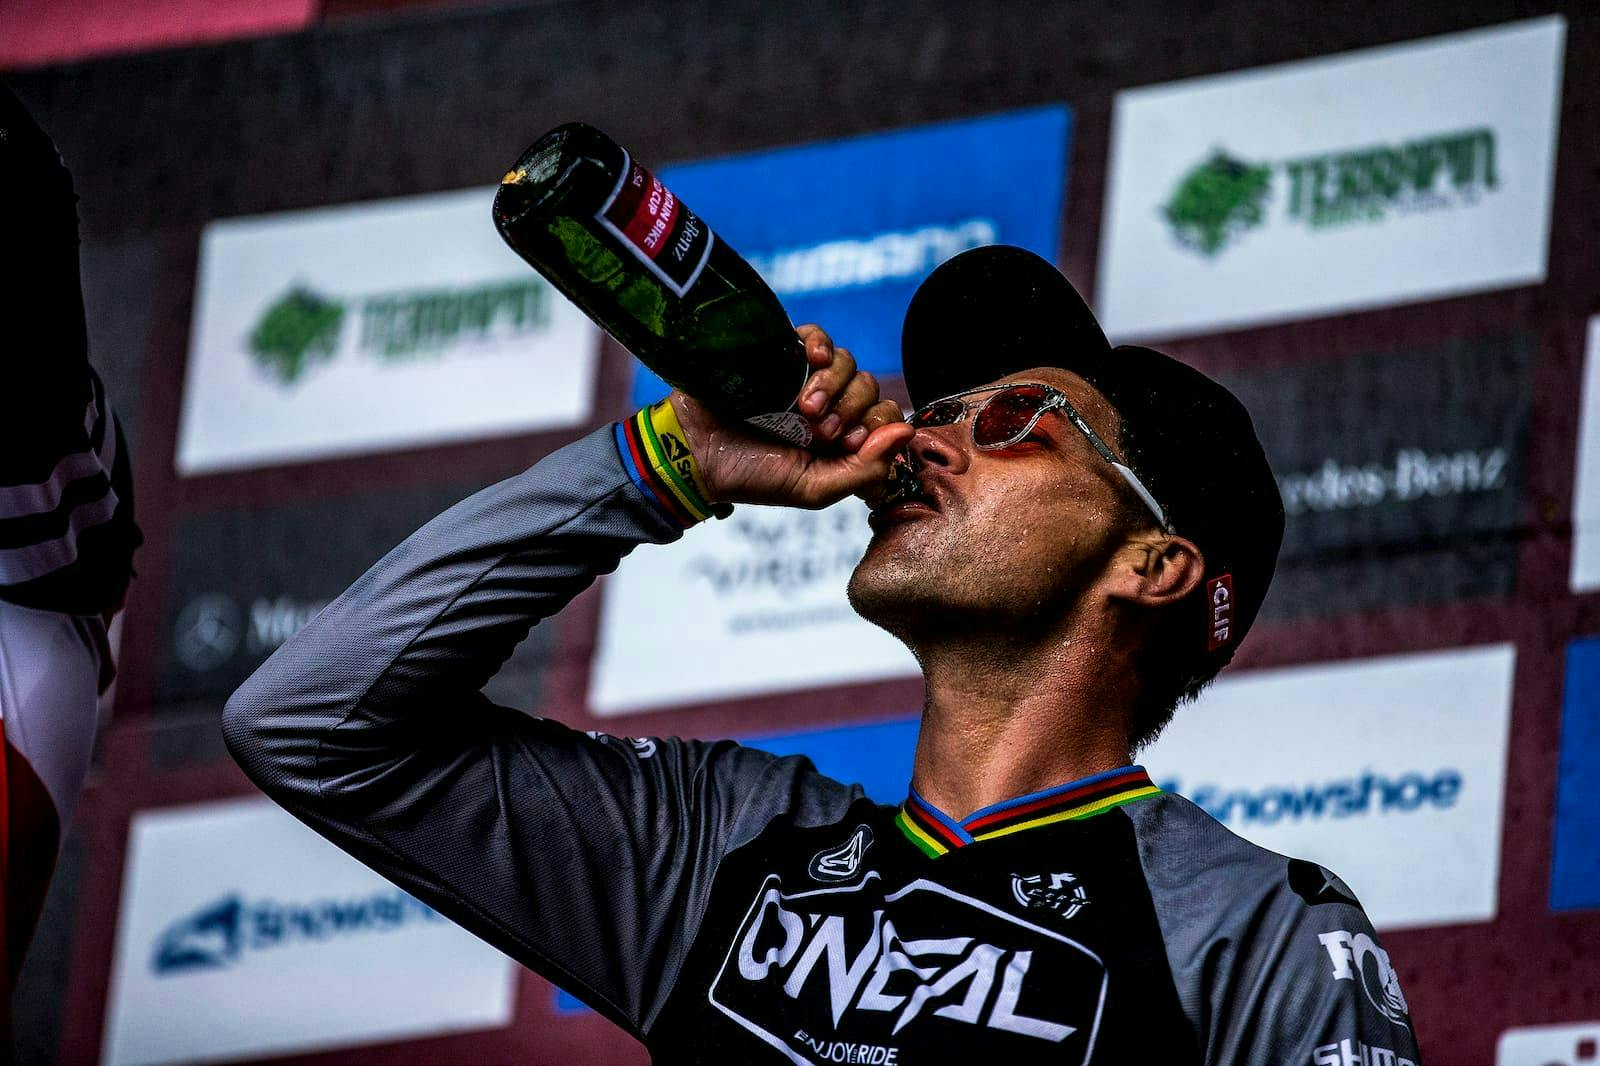 Greg Minnaar drinking on the podium